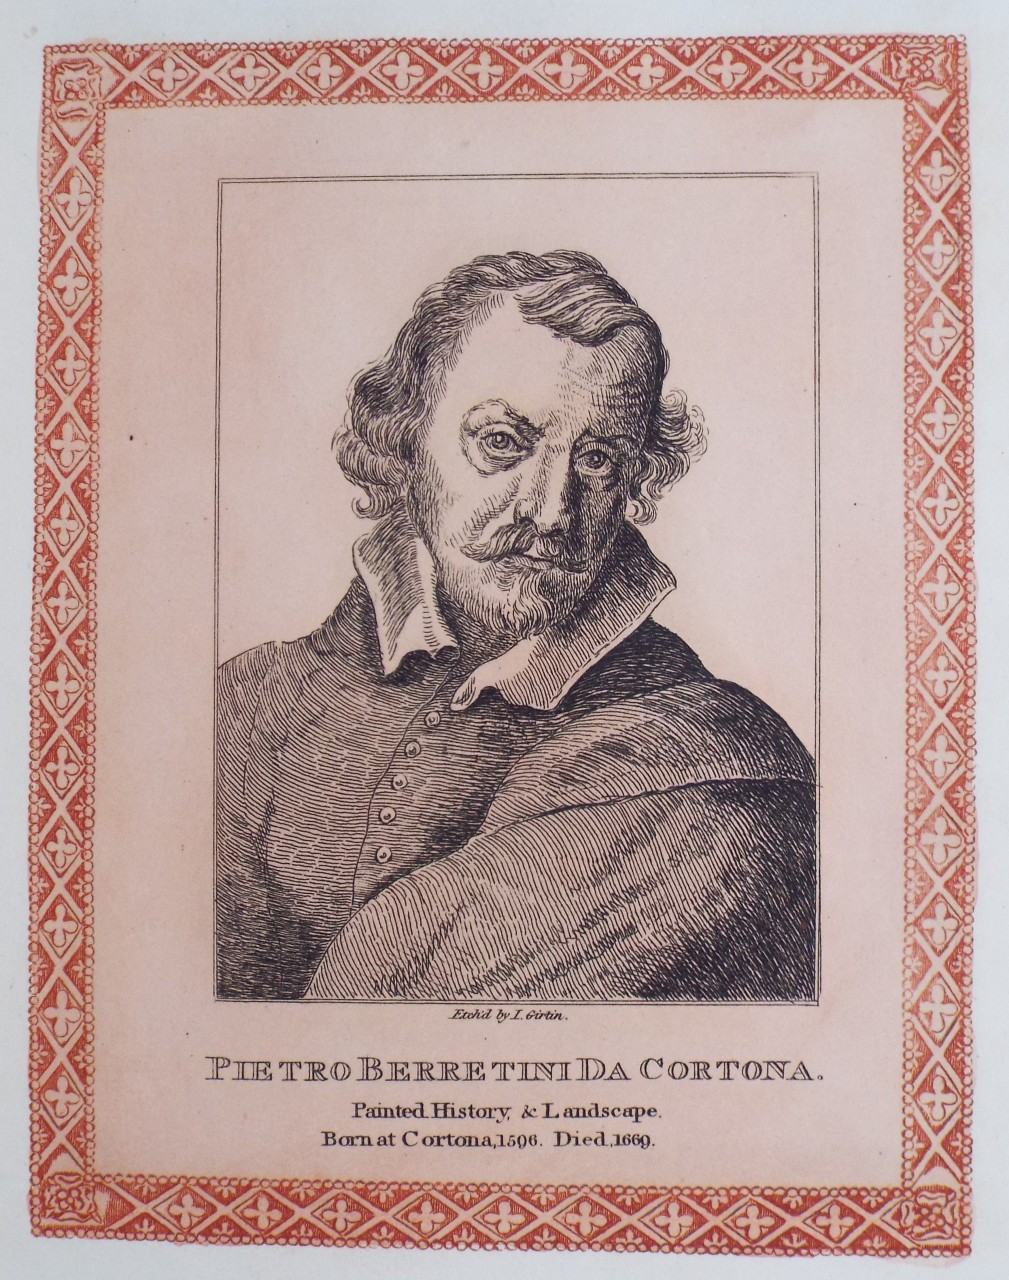 Etching - Pietro Berretini da Cortona. - Girtin